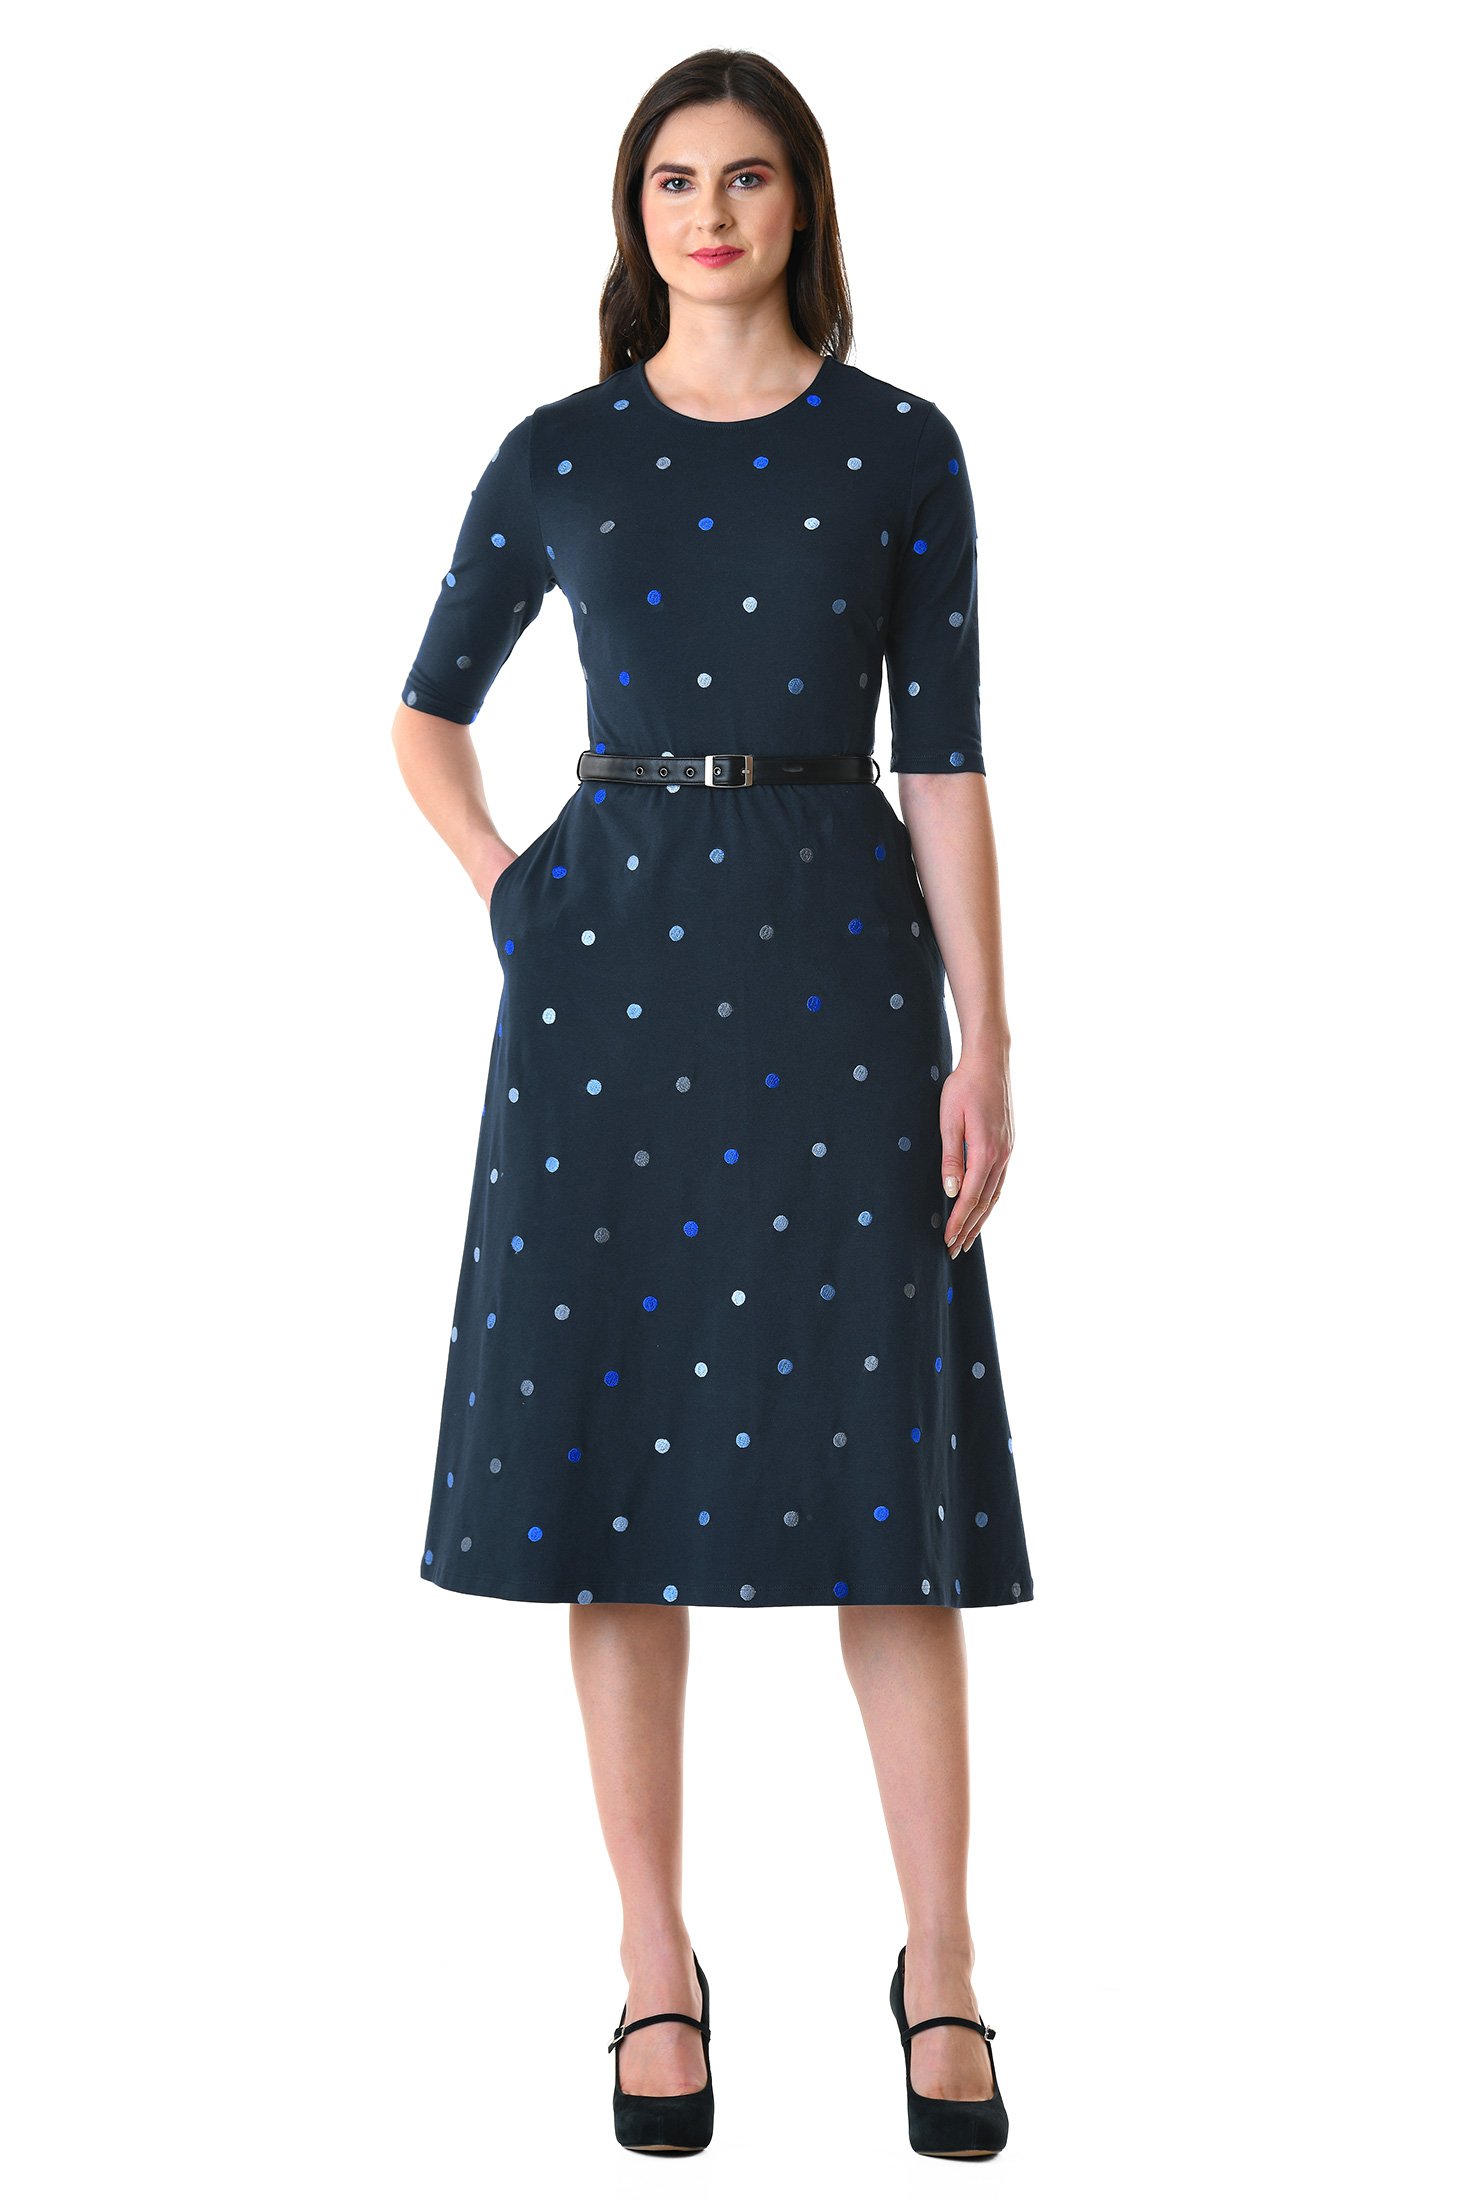 Shop Polka dot embellished cotton knit belted dress | eShakti